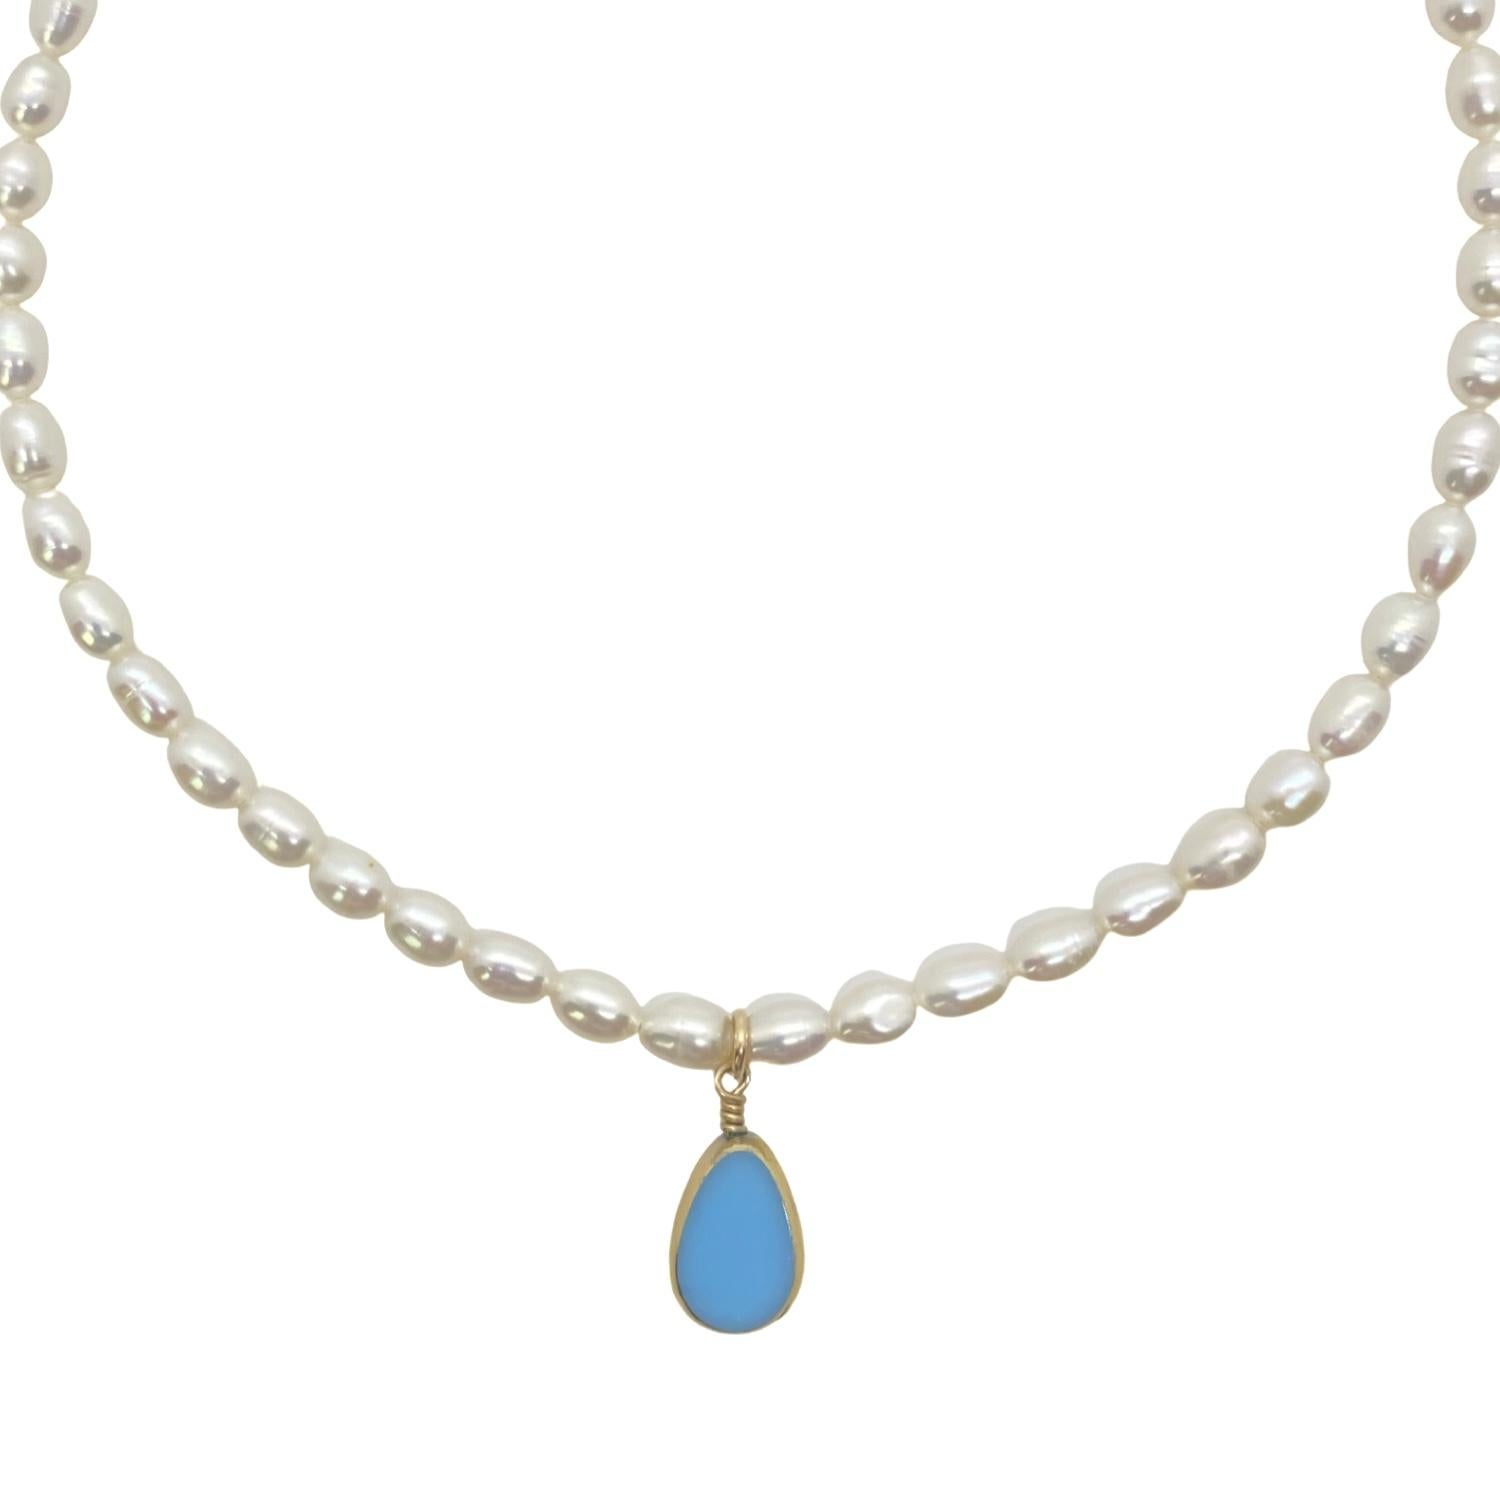 Perles d'eau douce blanches ornées d'une perle de verre allemand bleu layette qui est bordée d'or 24K. Il est fini avec des métaux remplis d'or 14K. Ce collier est réglable de 15 à 18 pouces.

Les perles de verre allemandes vintage bordées d'or 24K